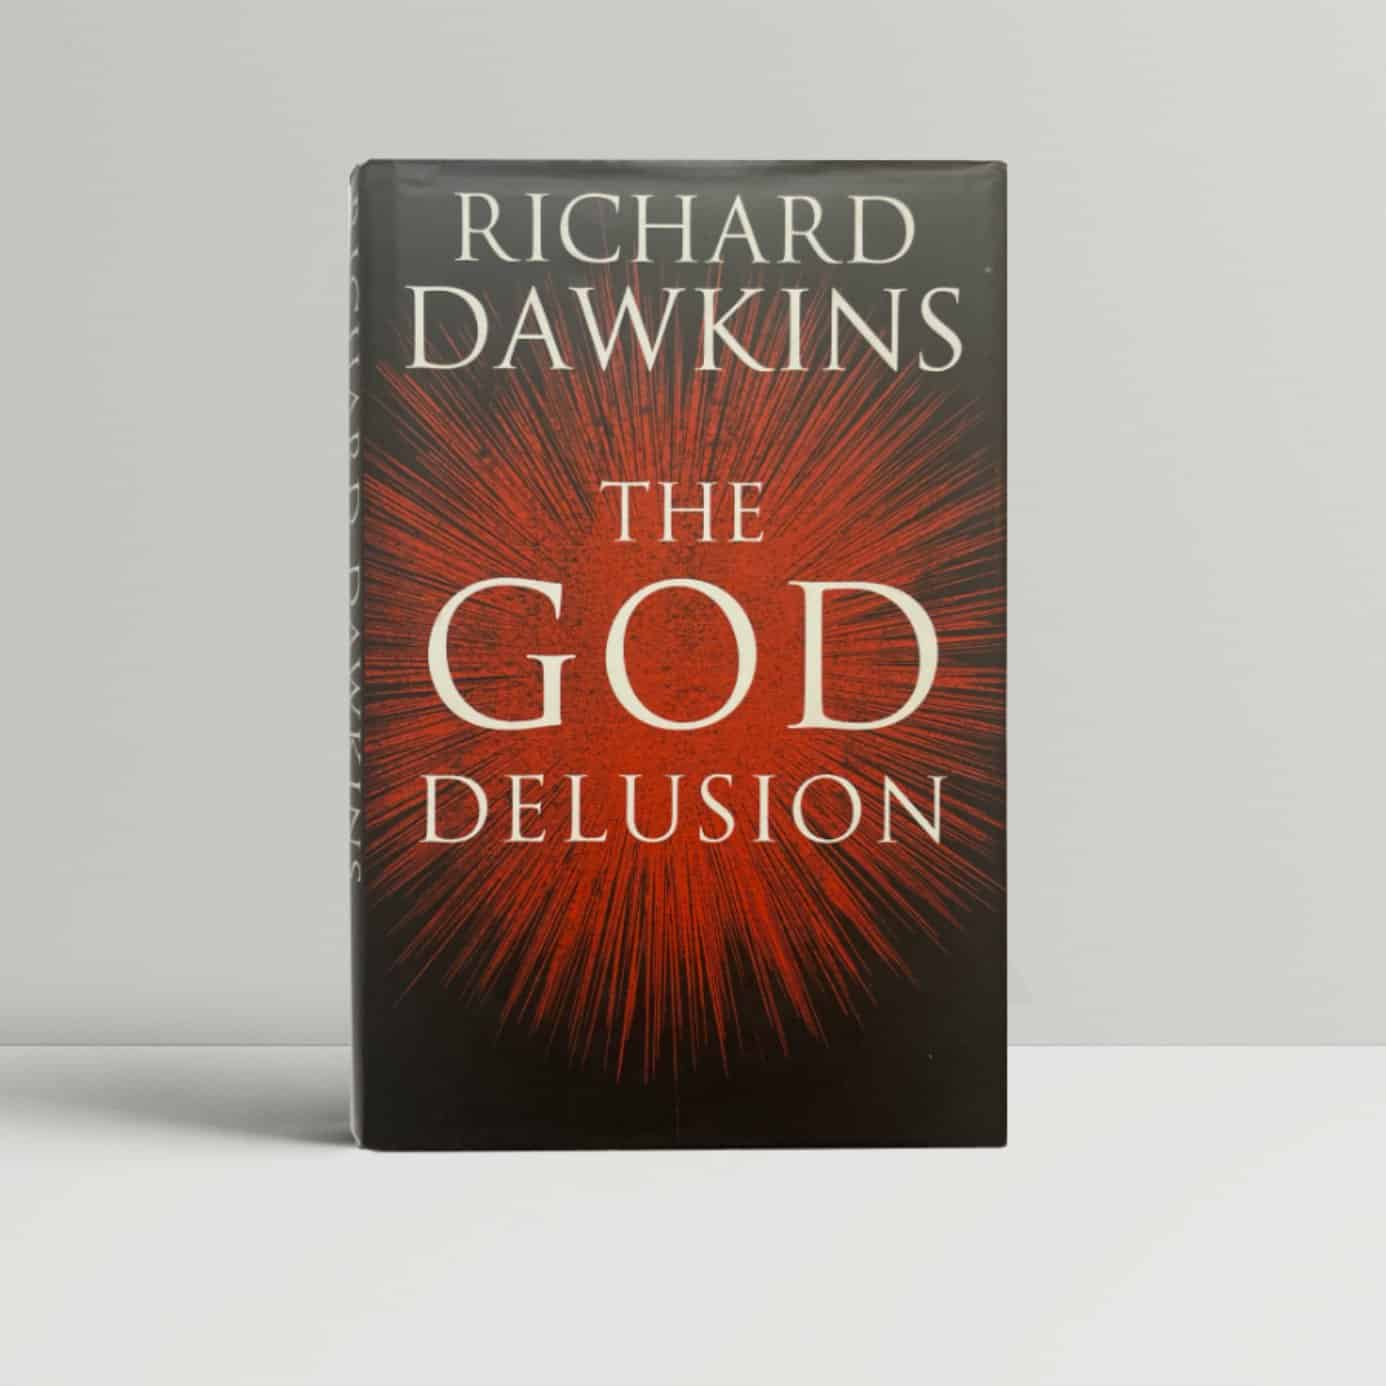 richard dawkins the god delusion first edi1